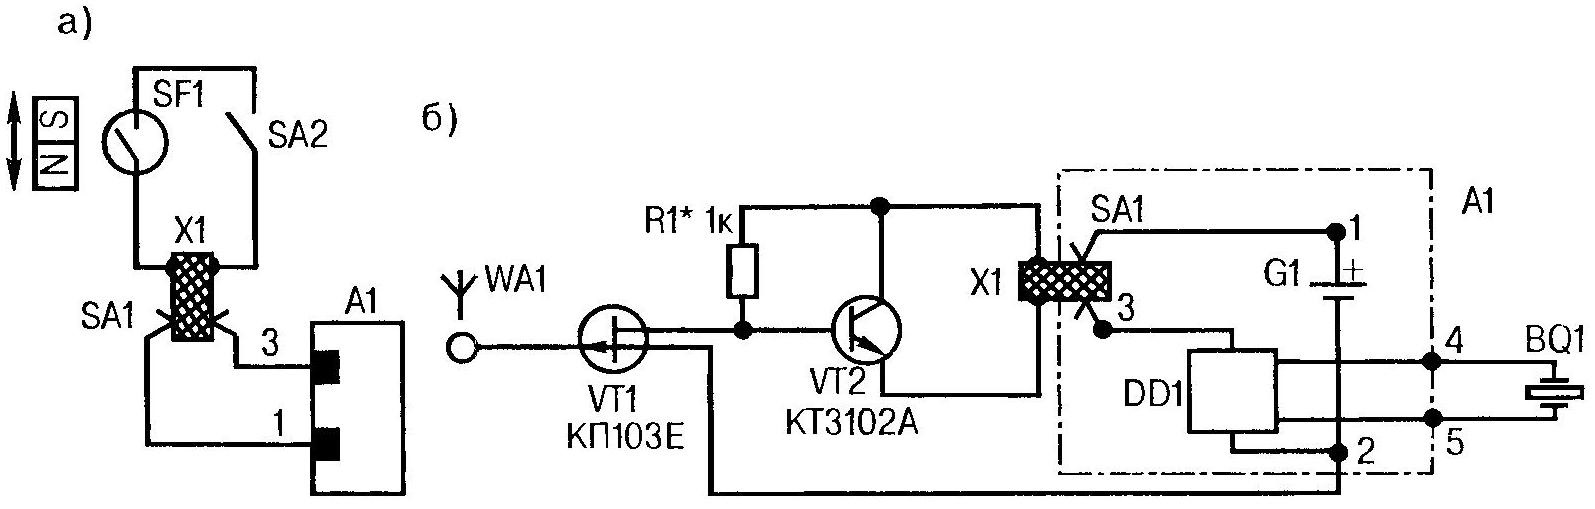 Рис. 2. Схемы для изготовления музыкальных сигнализаторов с контактным датчиком (а) и полевым транзистором (б) на входе